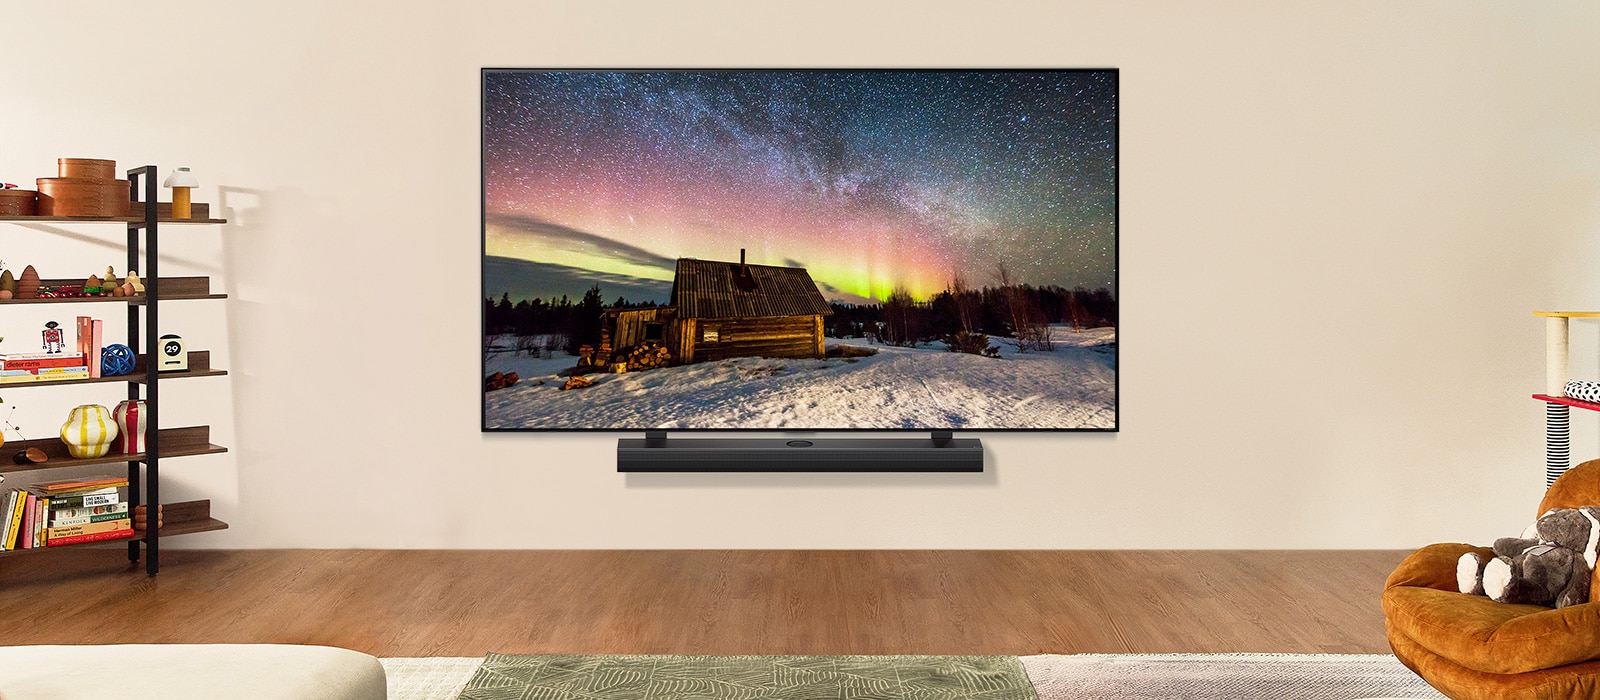 Gündüz modern bir yaşam alanında LG TV ve LG Soundbar. Kuzey ışıklarını gösteren ekran görüntüsü ideal parlaklık seviyelerinde görüntüleniyor.